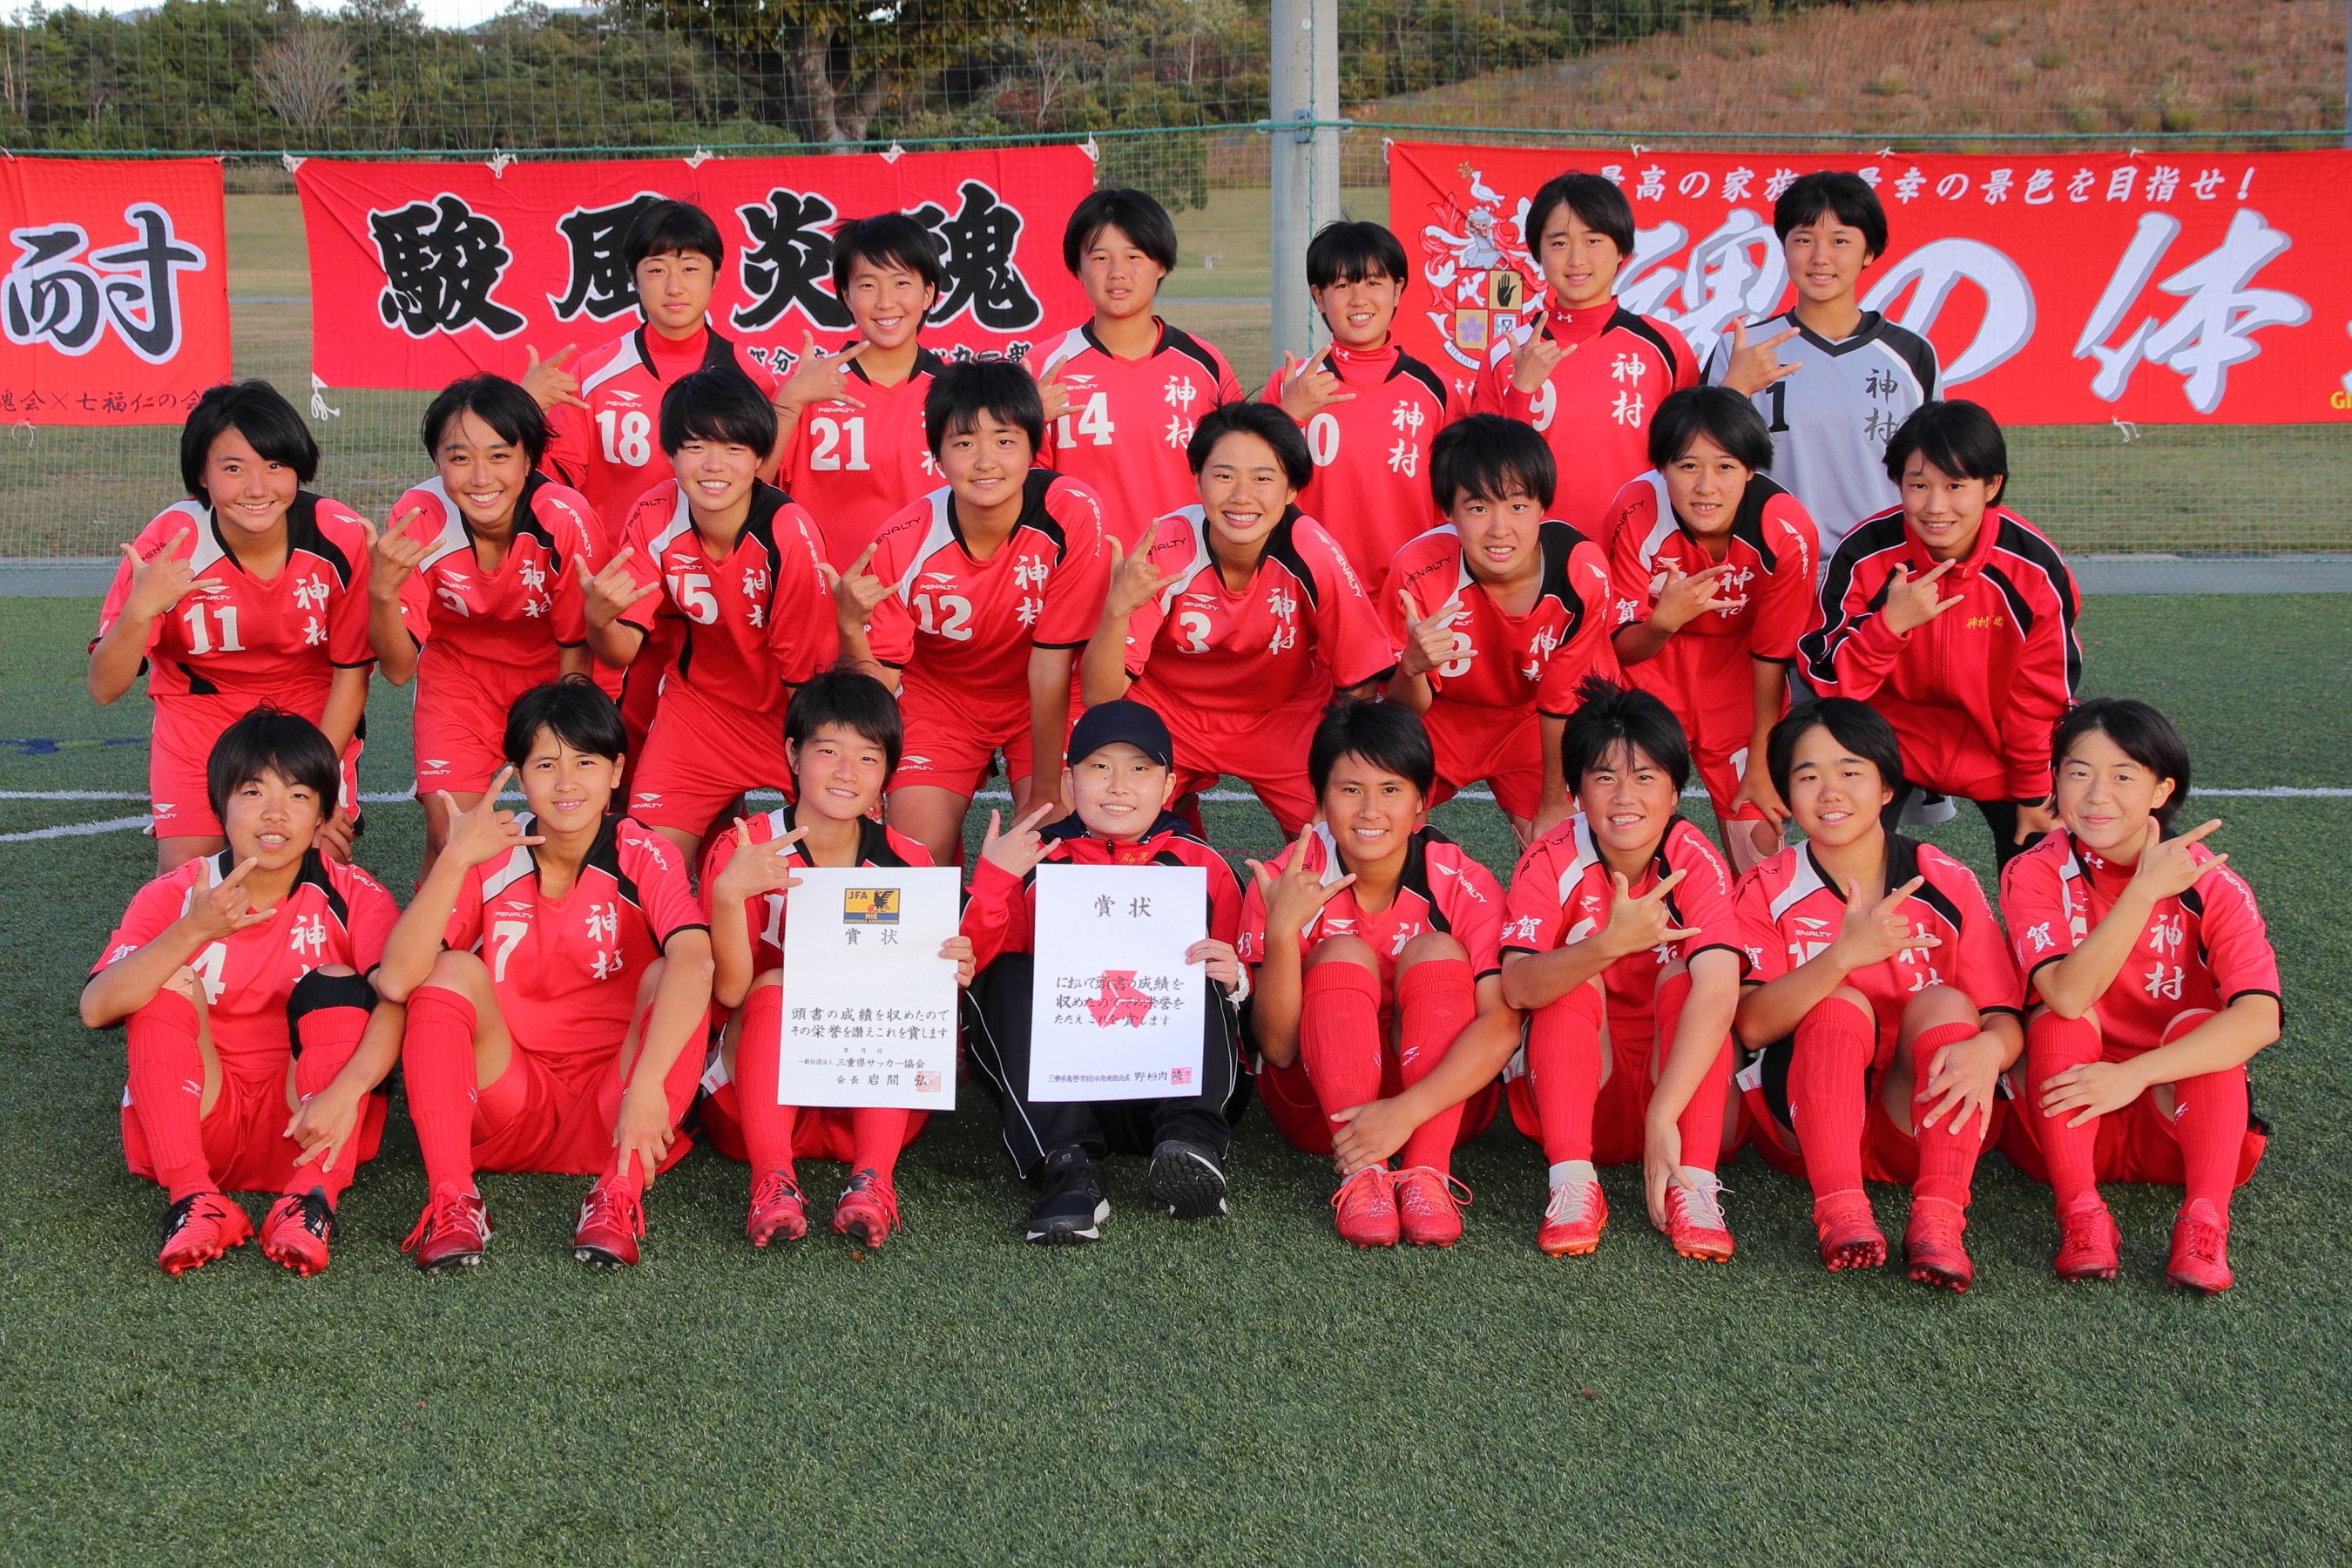 三重県サッカー協会 Jfa 公益財団法人日本サッカー協会